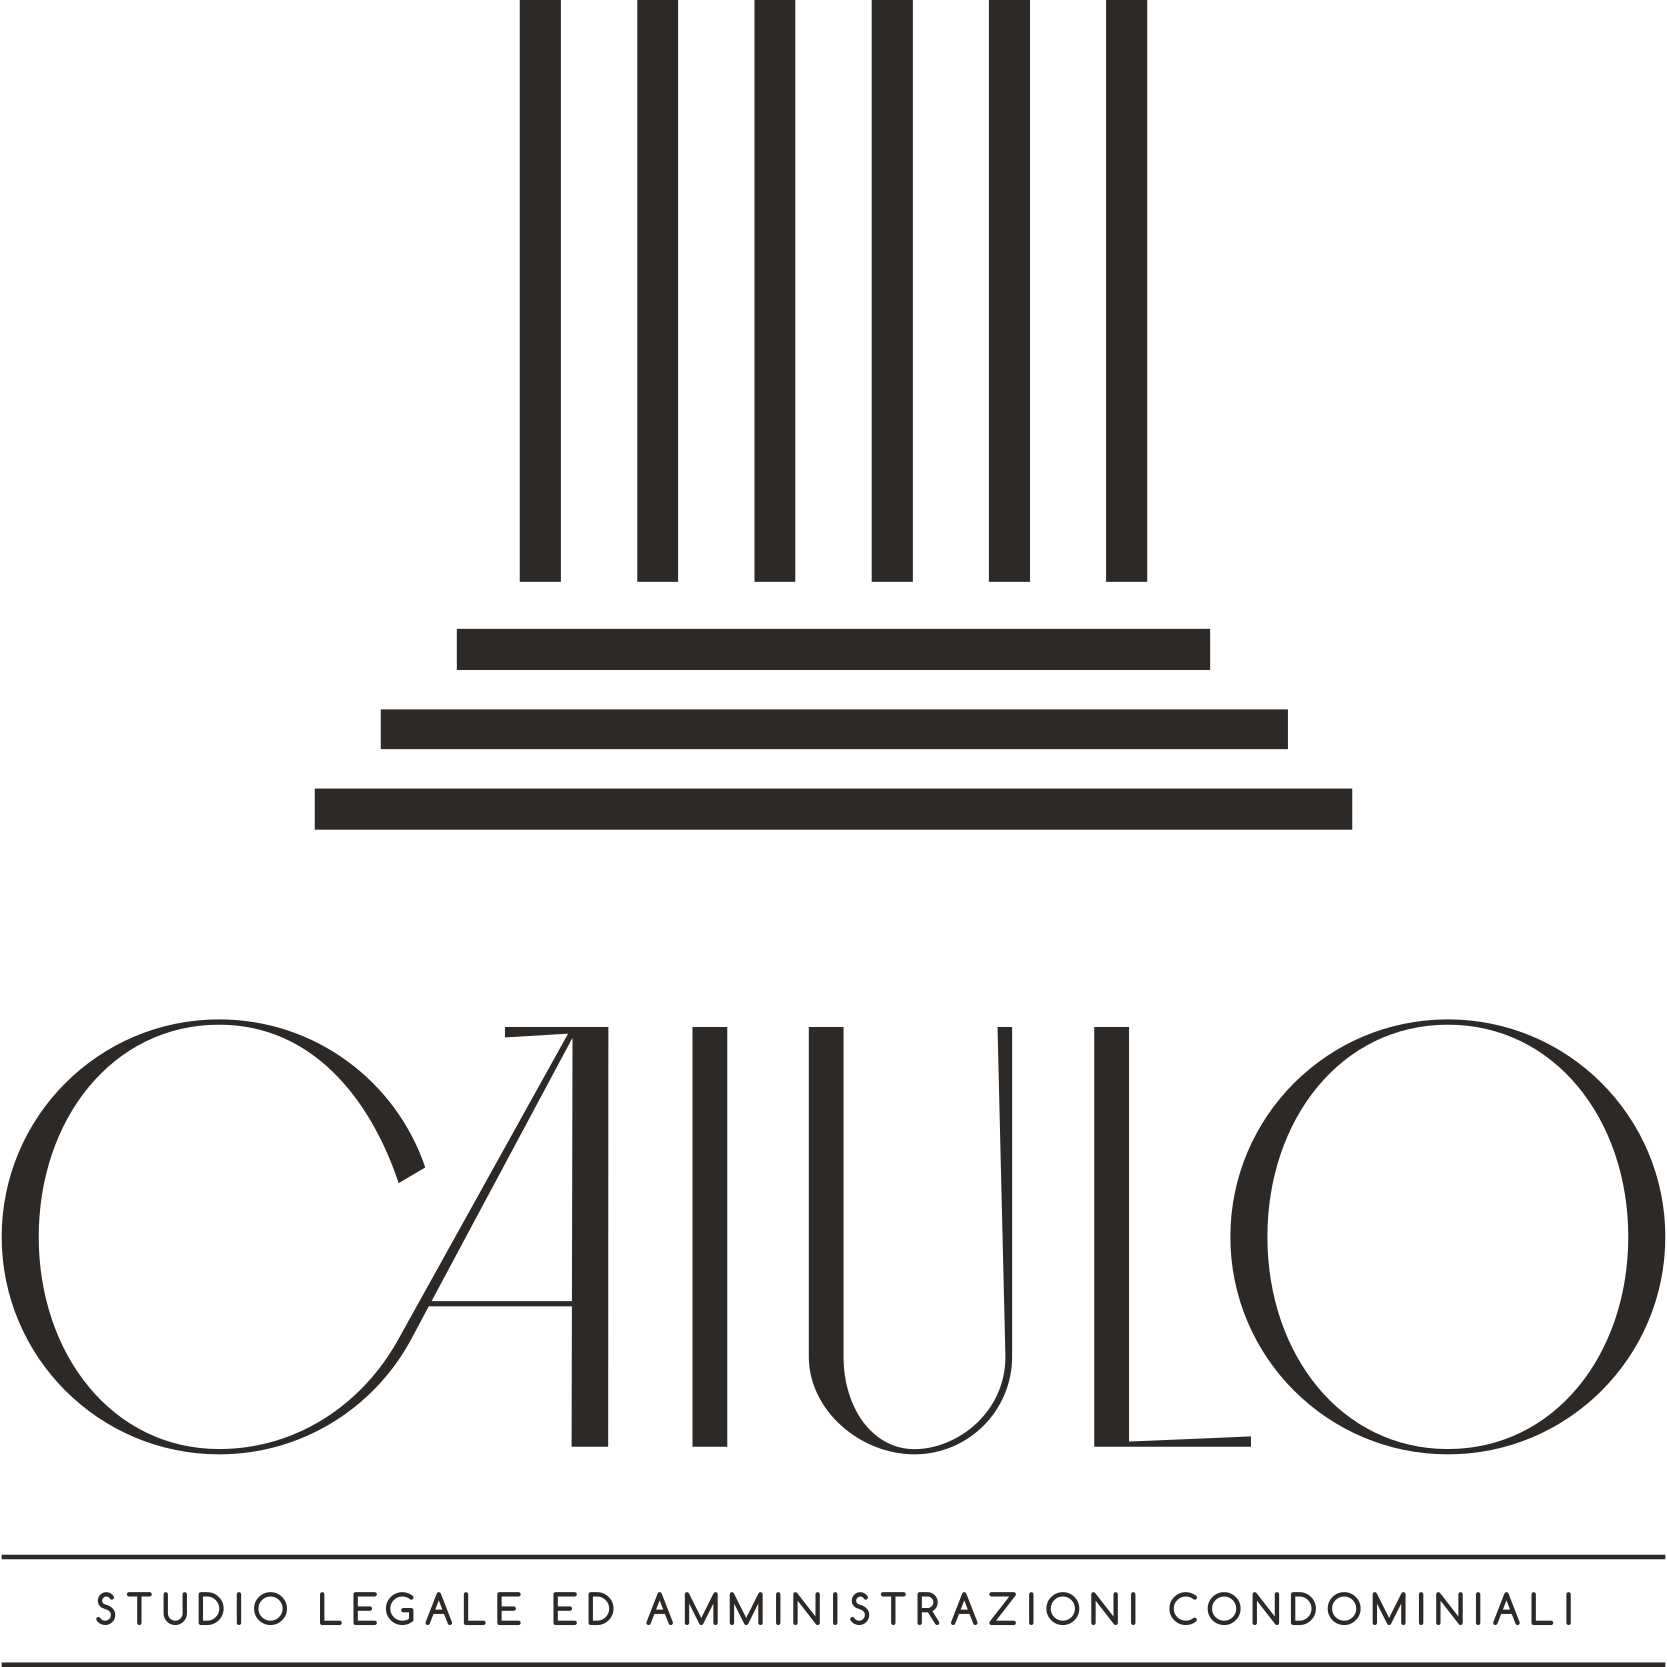 CAIULO - Studio Legale ed Amministrazioni condominiali